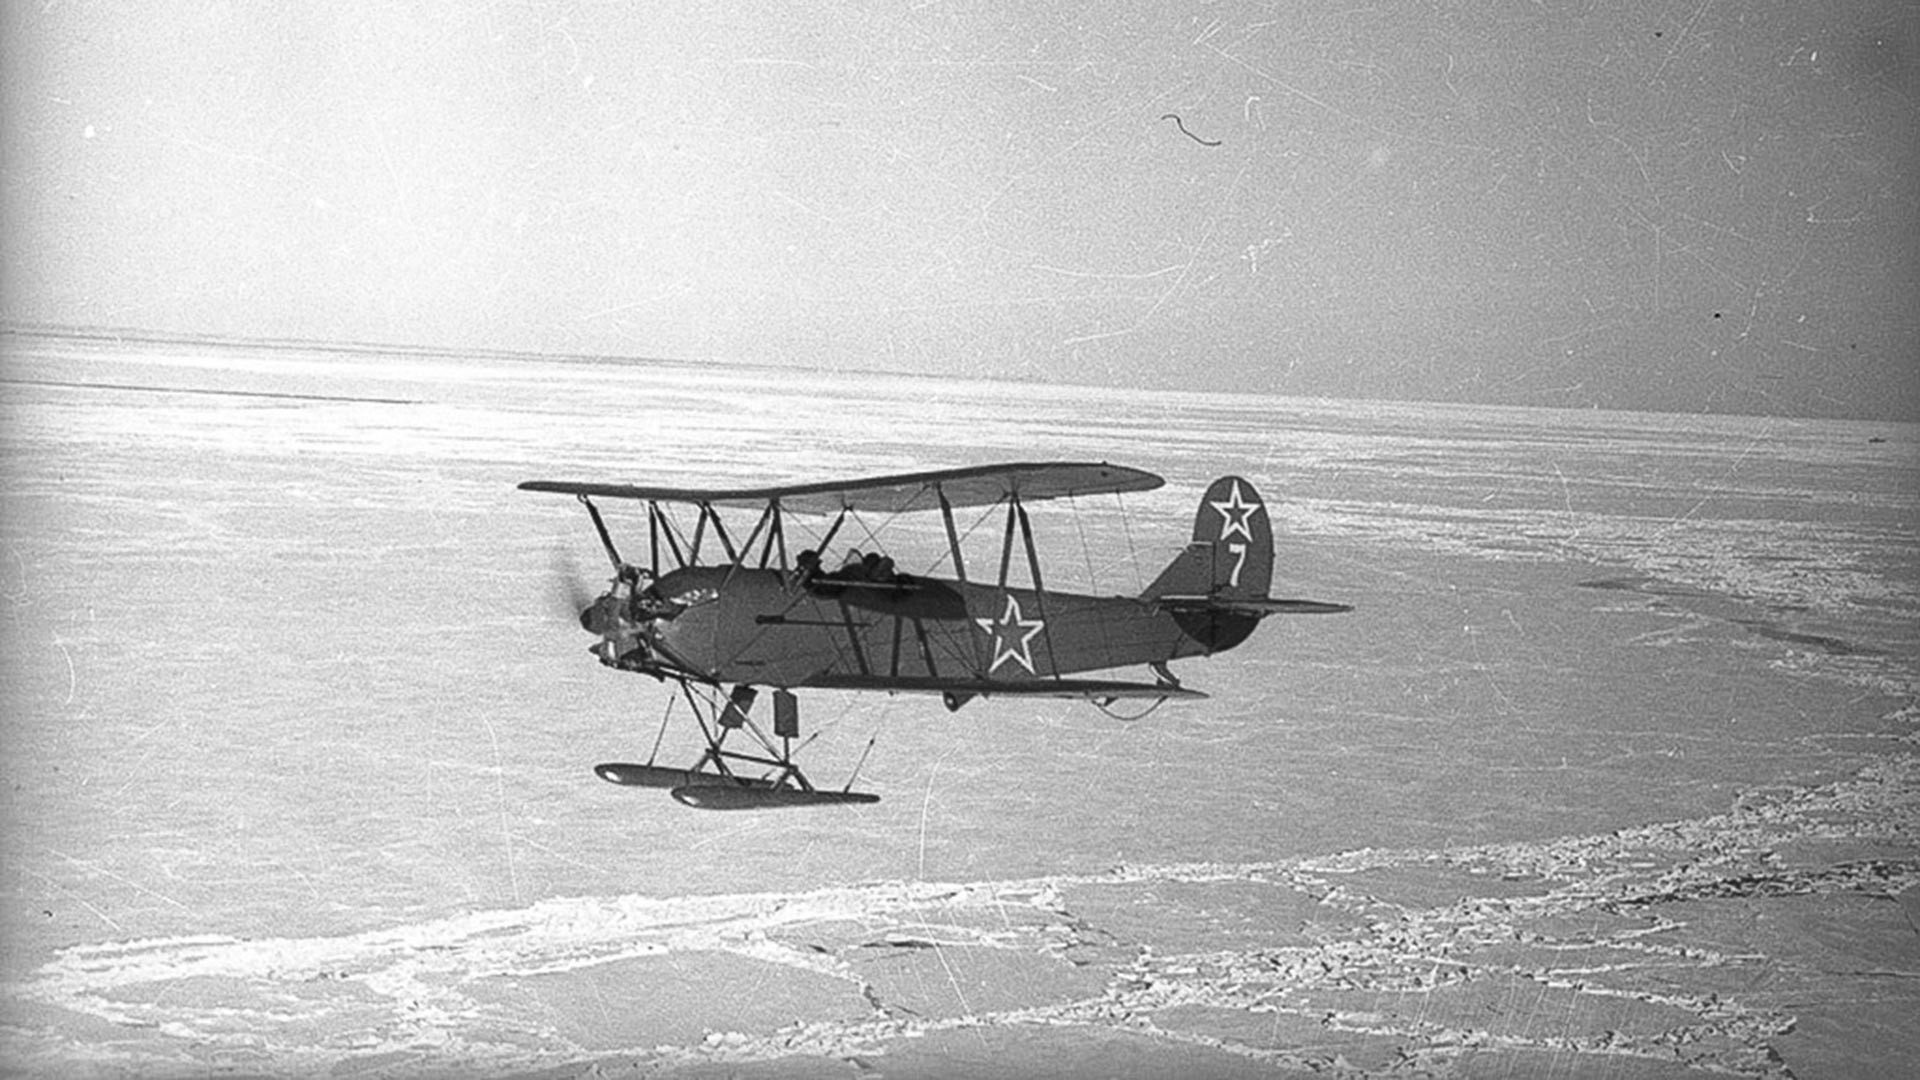 Авионот У-2 бр. 7 ќе собори непријателска ПВО во ноќта наспроти 1.8.1943 година. Екипажот (пилотот Полунина Валентина Ивановна и навигаторот Каширина Глафира Алексеевна) ќе загине.